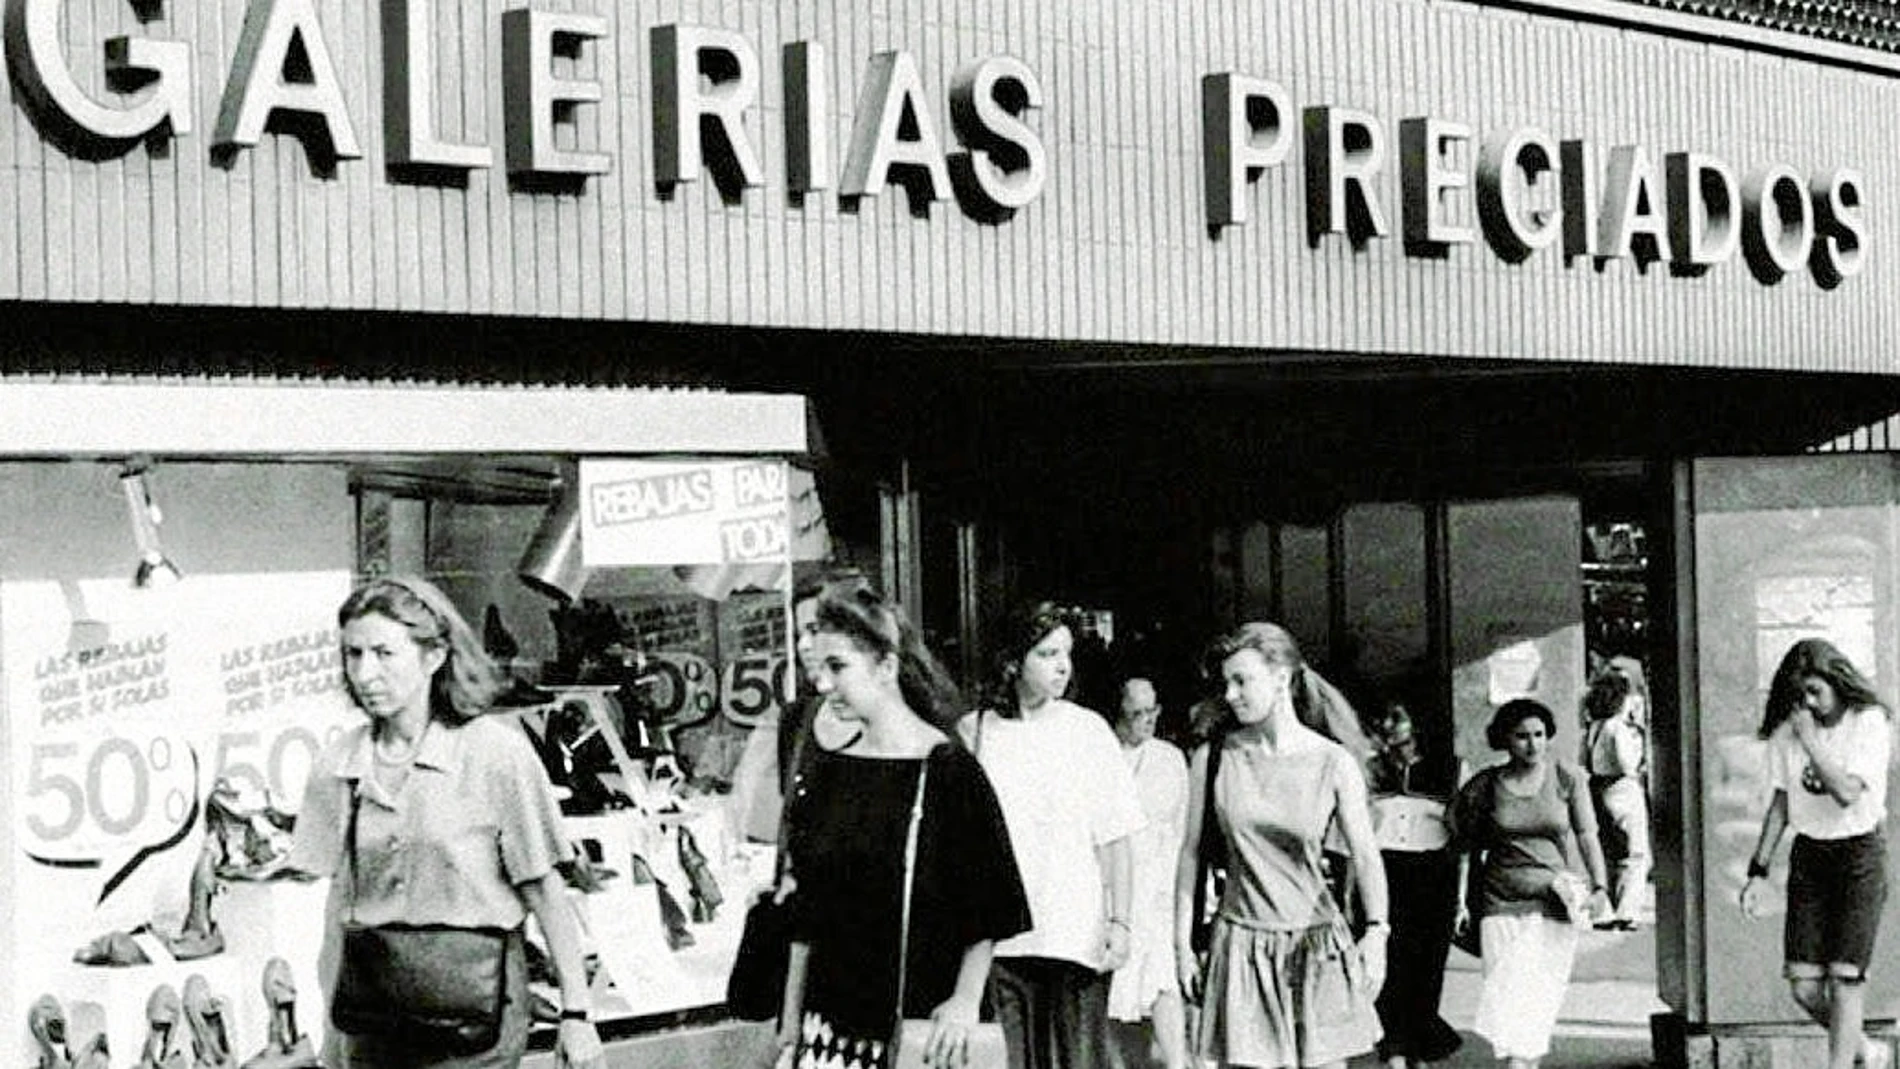 Imagen de Galerías Preciados en los años 60